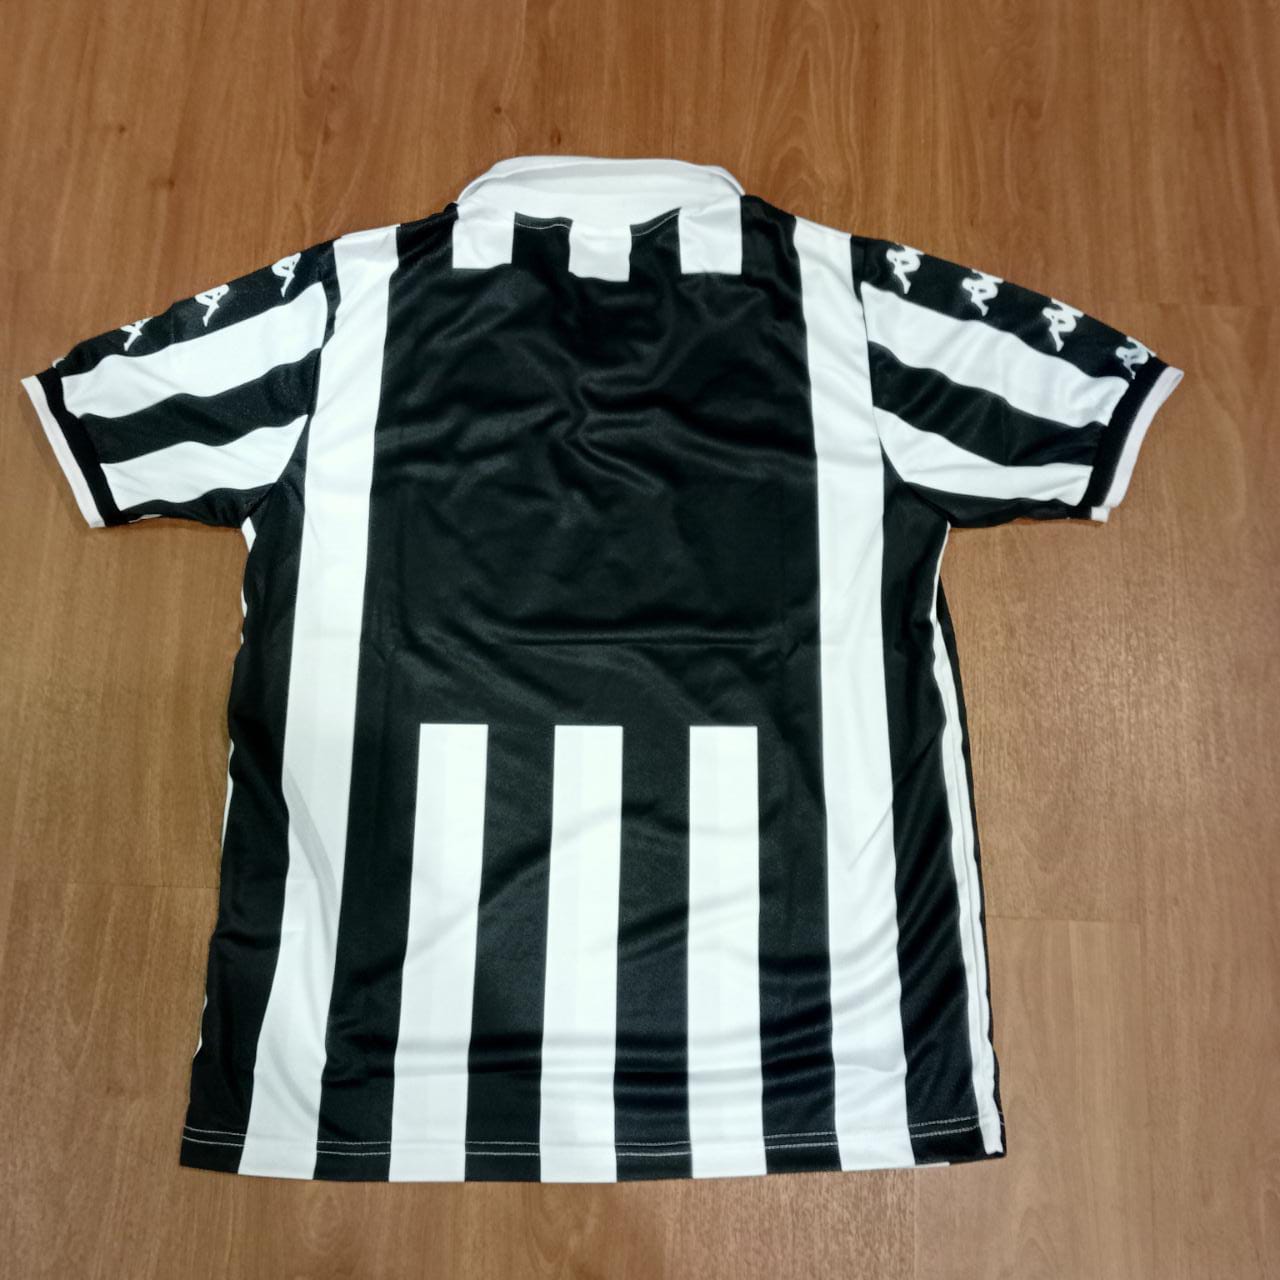 1999 Juventus Home Shirt